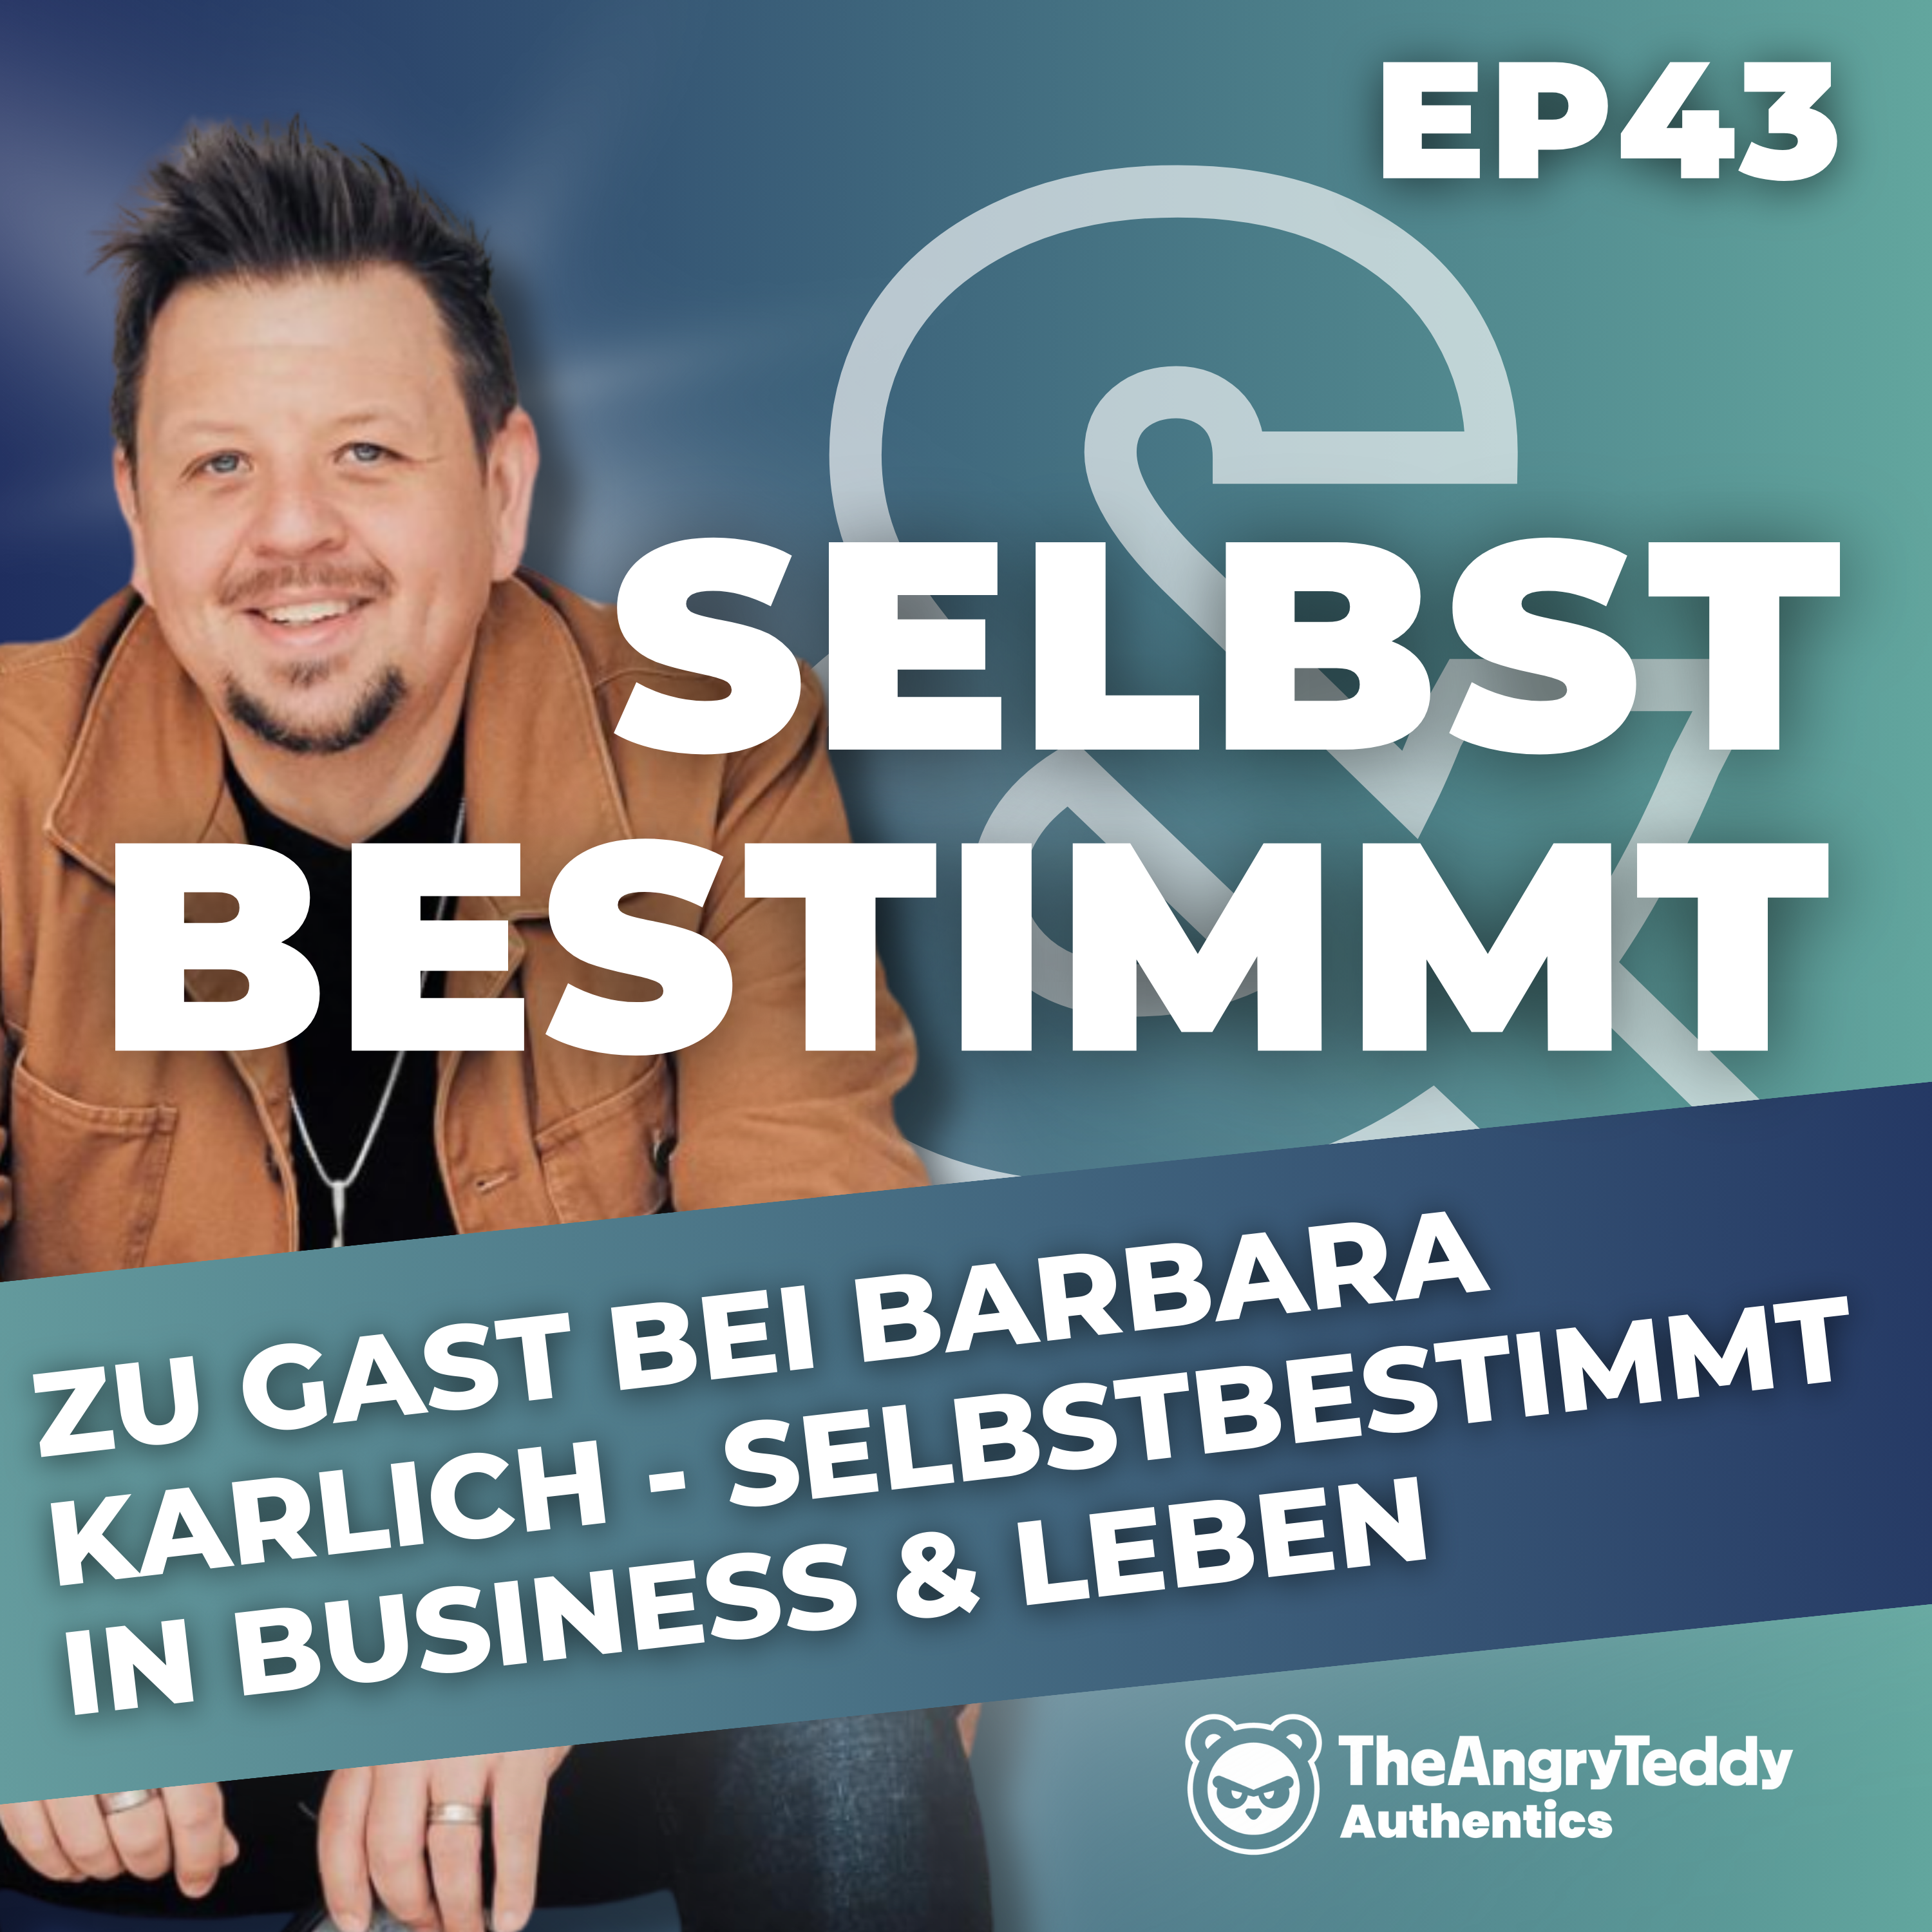 Zu Gast bei Barbara Karlich – Selbstbestimmt in Business & Leben | BoB043